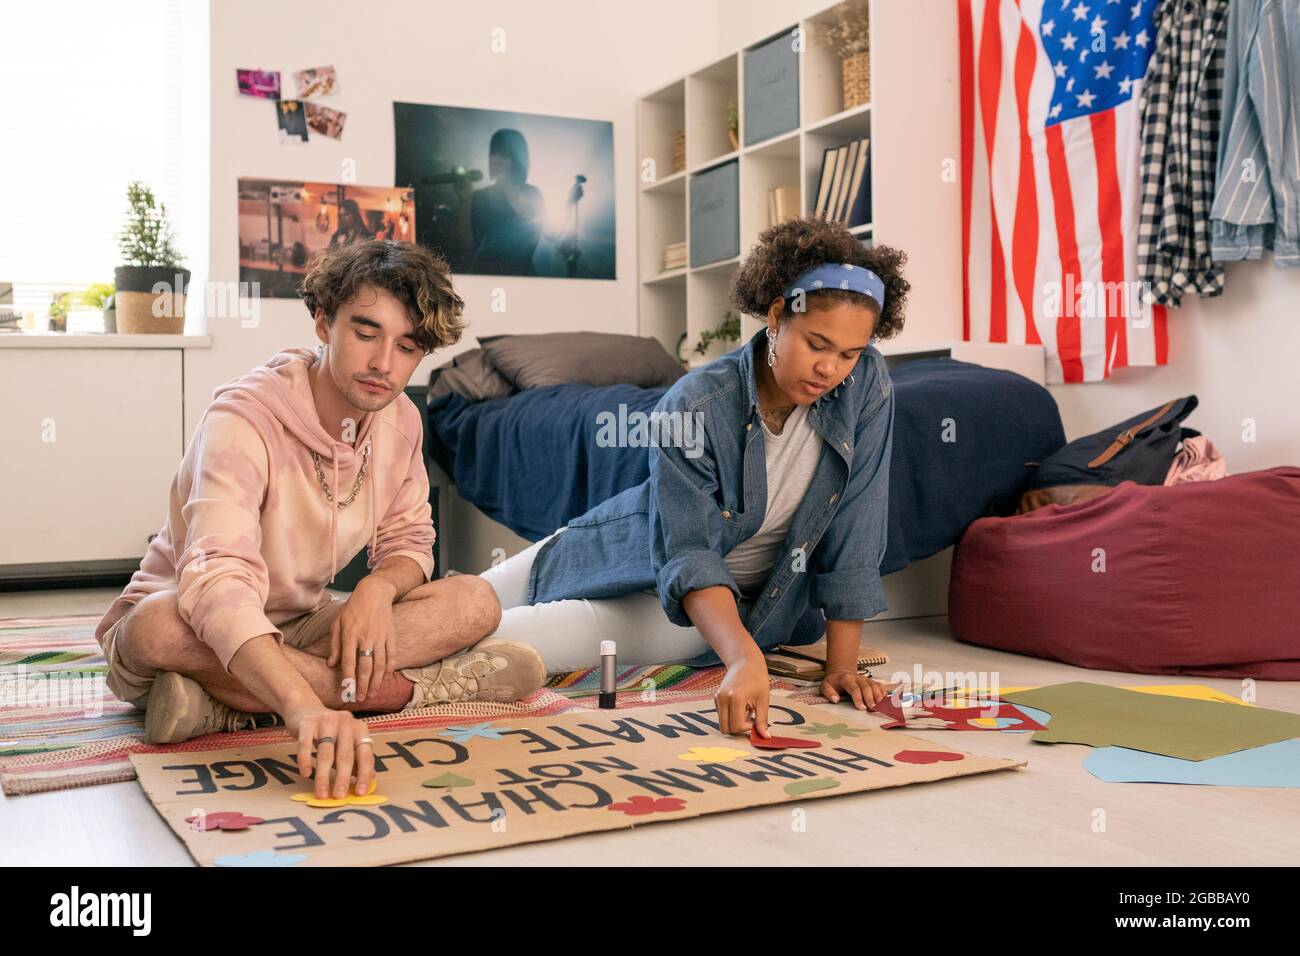 Due progettisti adolescenti che lavorano sulla carta da progetto climatica in ambiente domestico Foto Stock